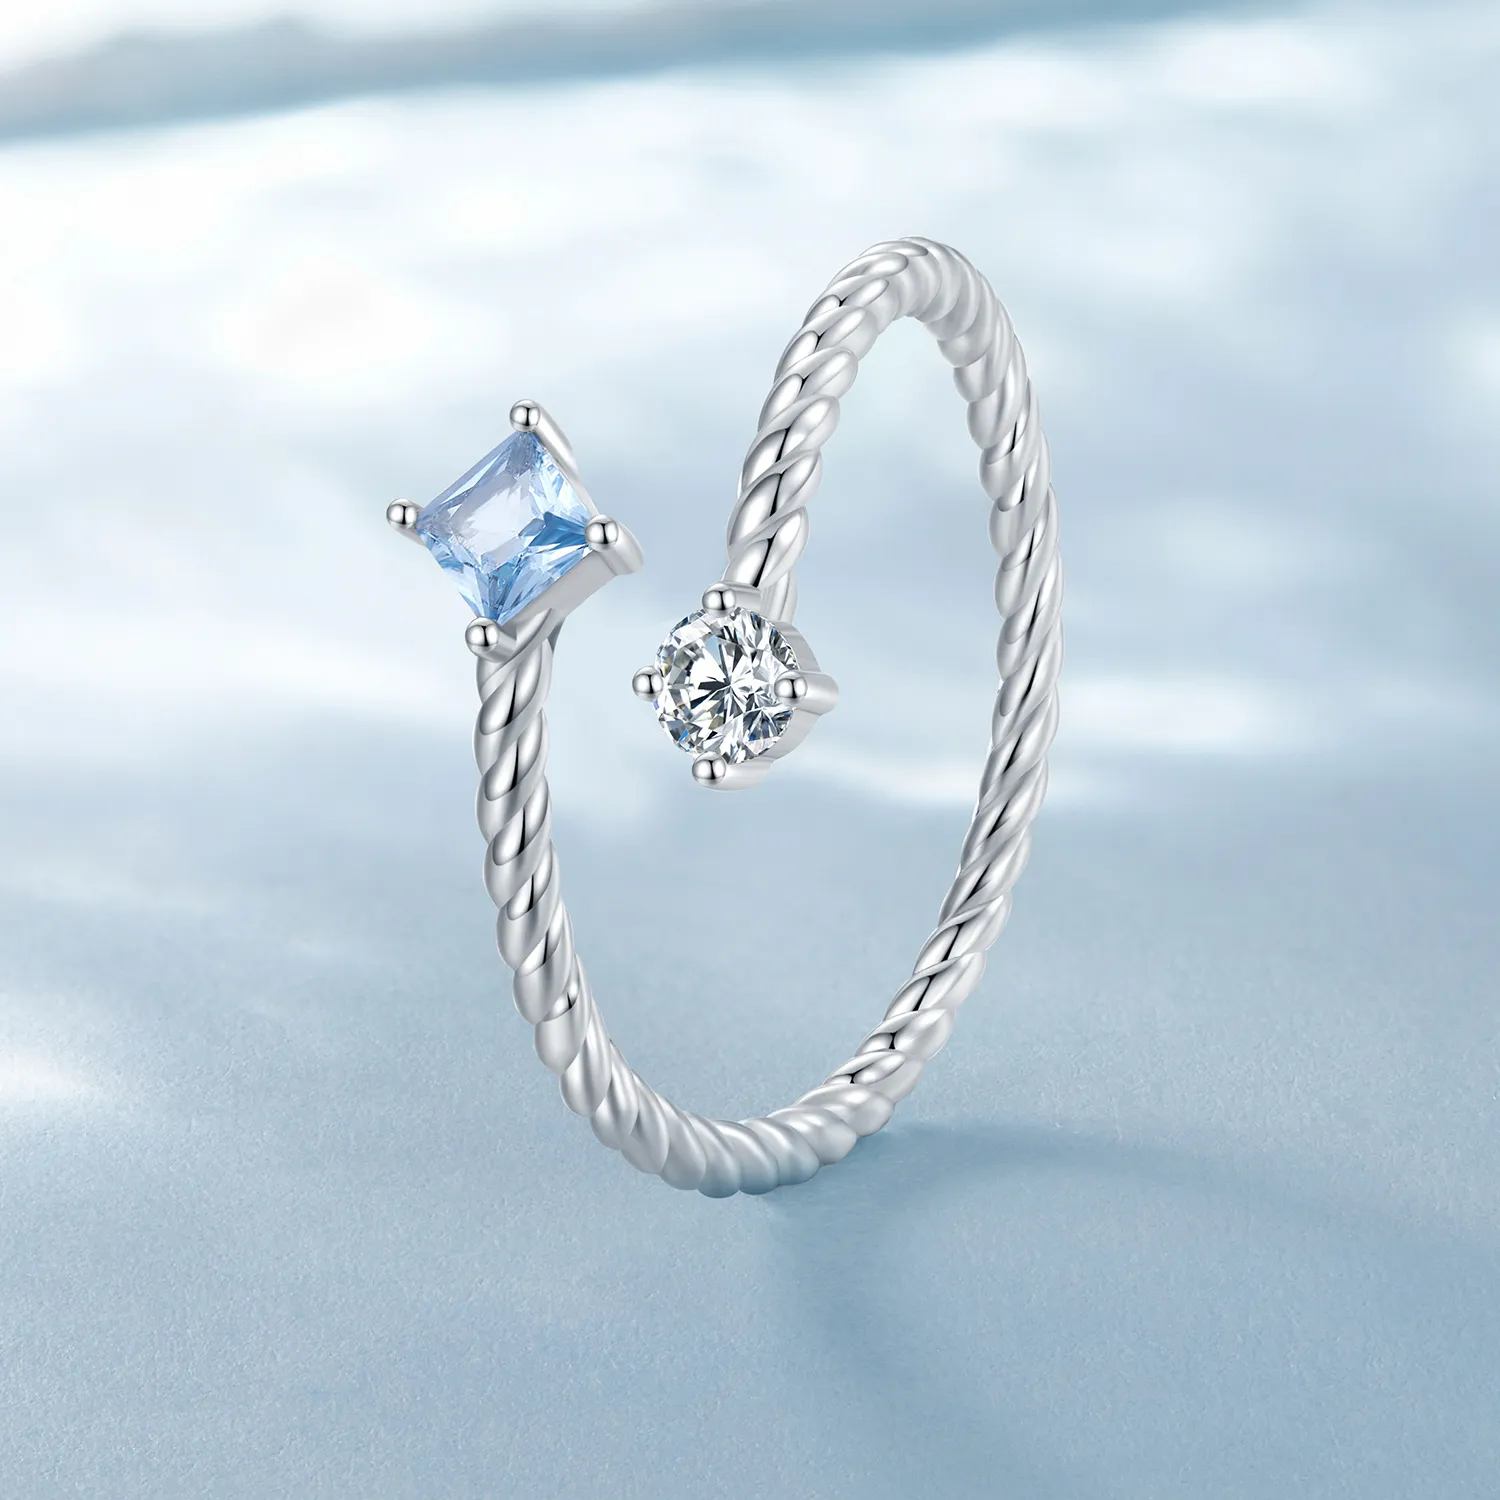 Inel în stil Pandora cu design albastru în formă de spirală - SCR923